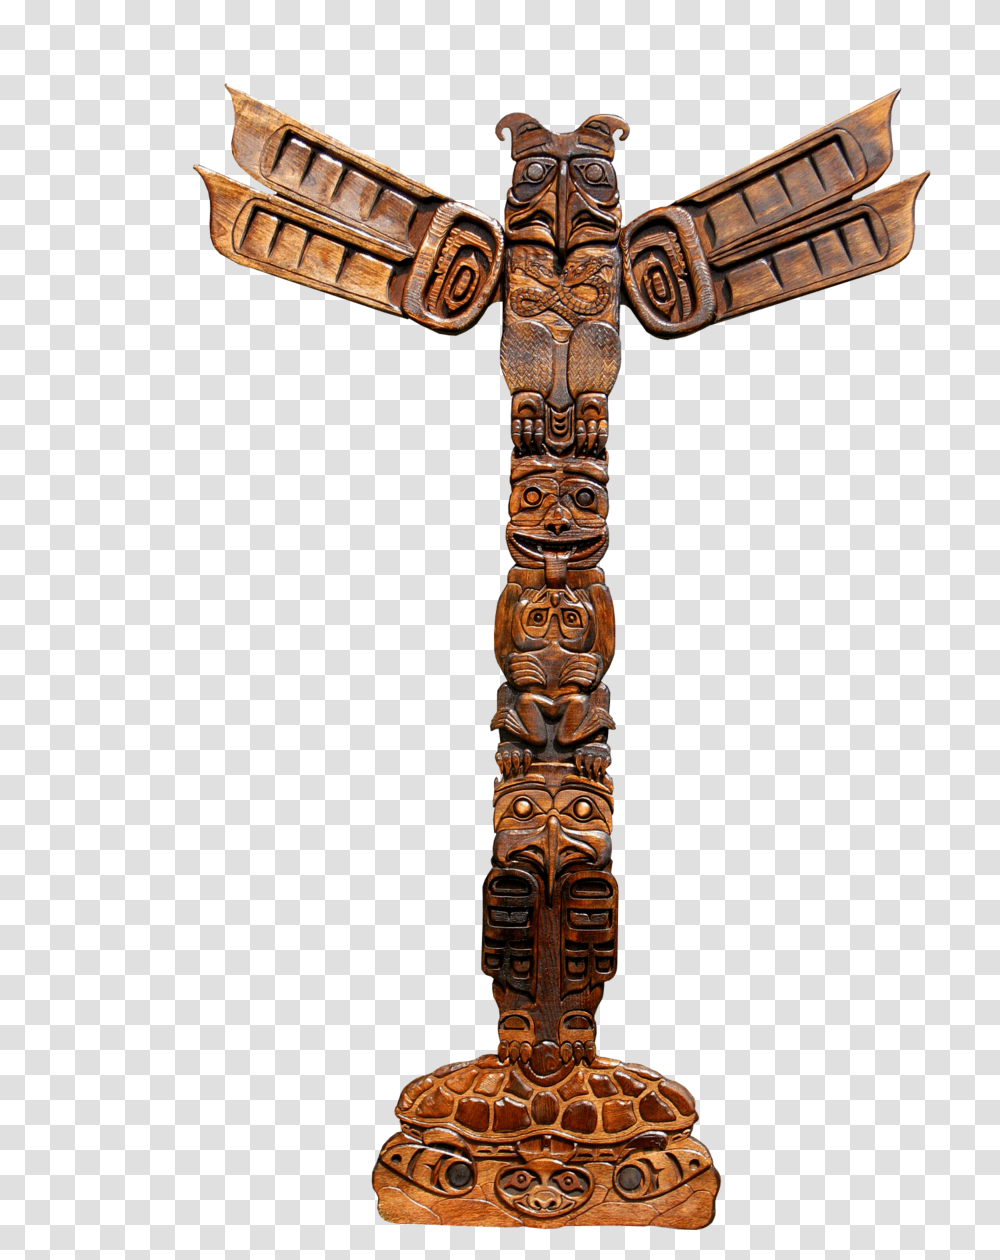 Totem Pole Totem Pole Images, Architecture, Building, Cross Transparent Png